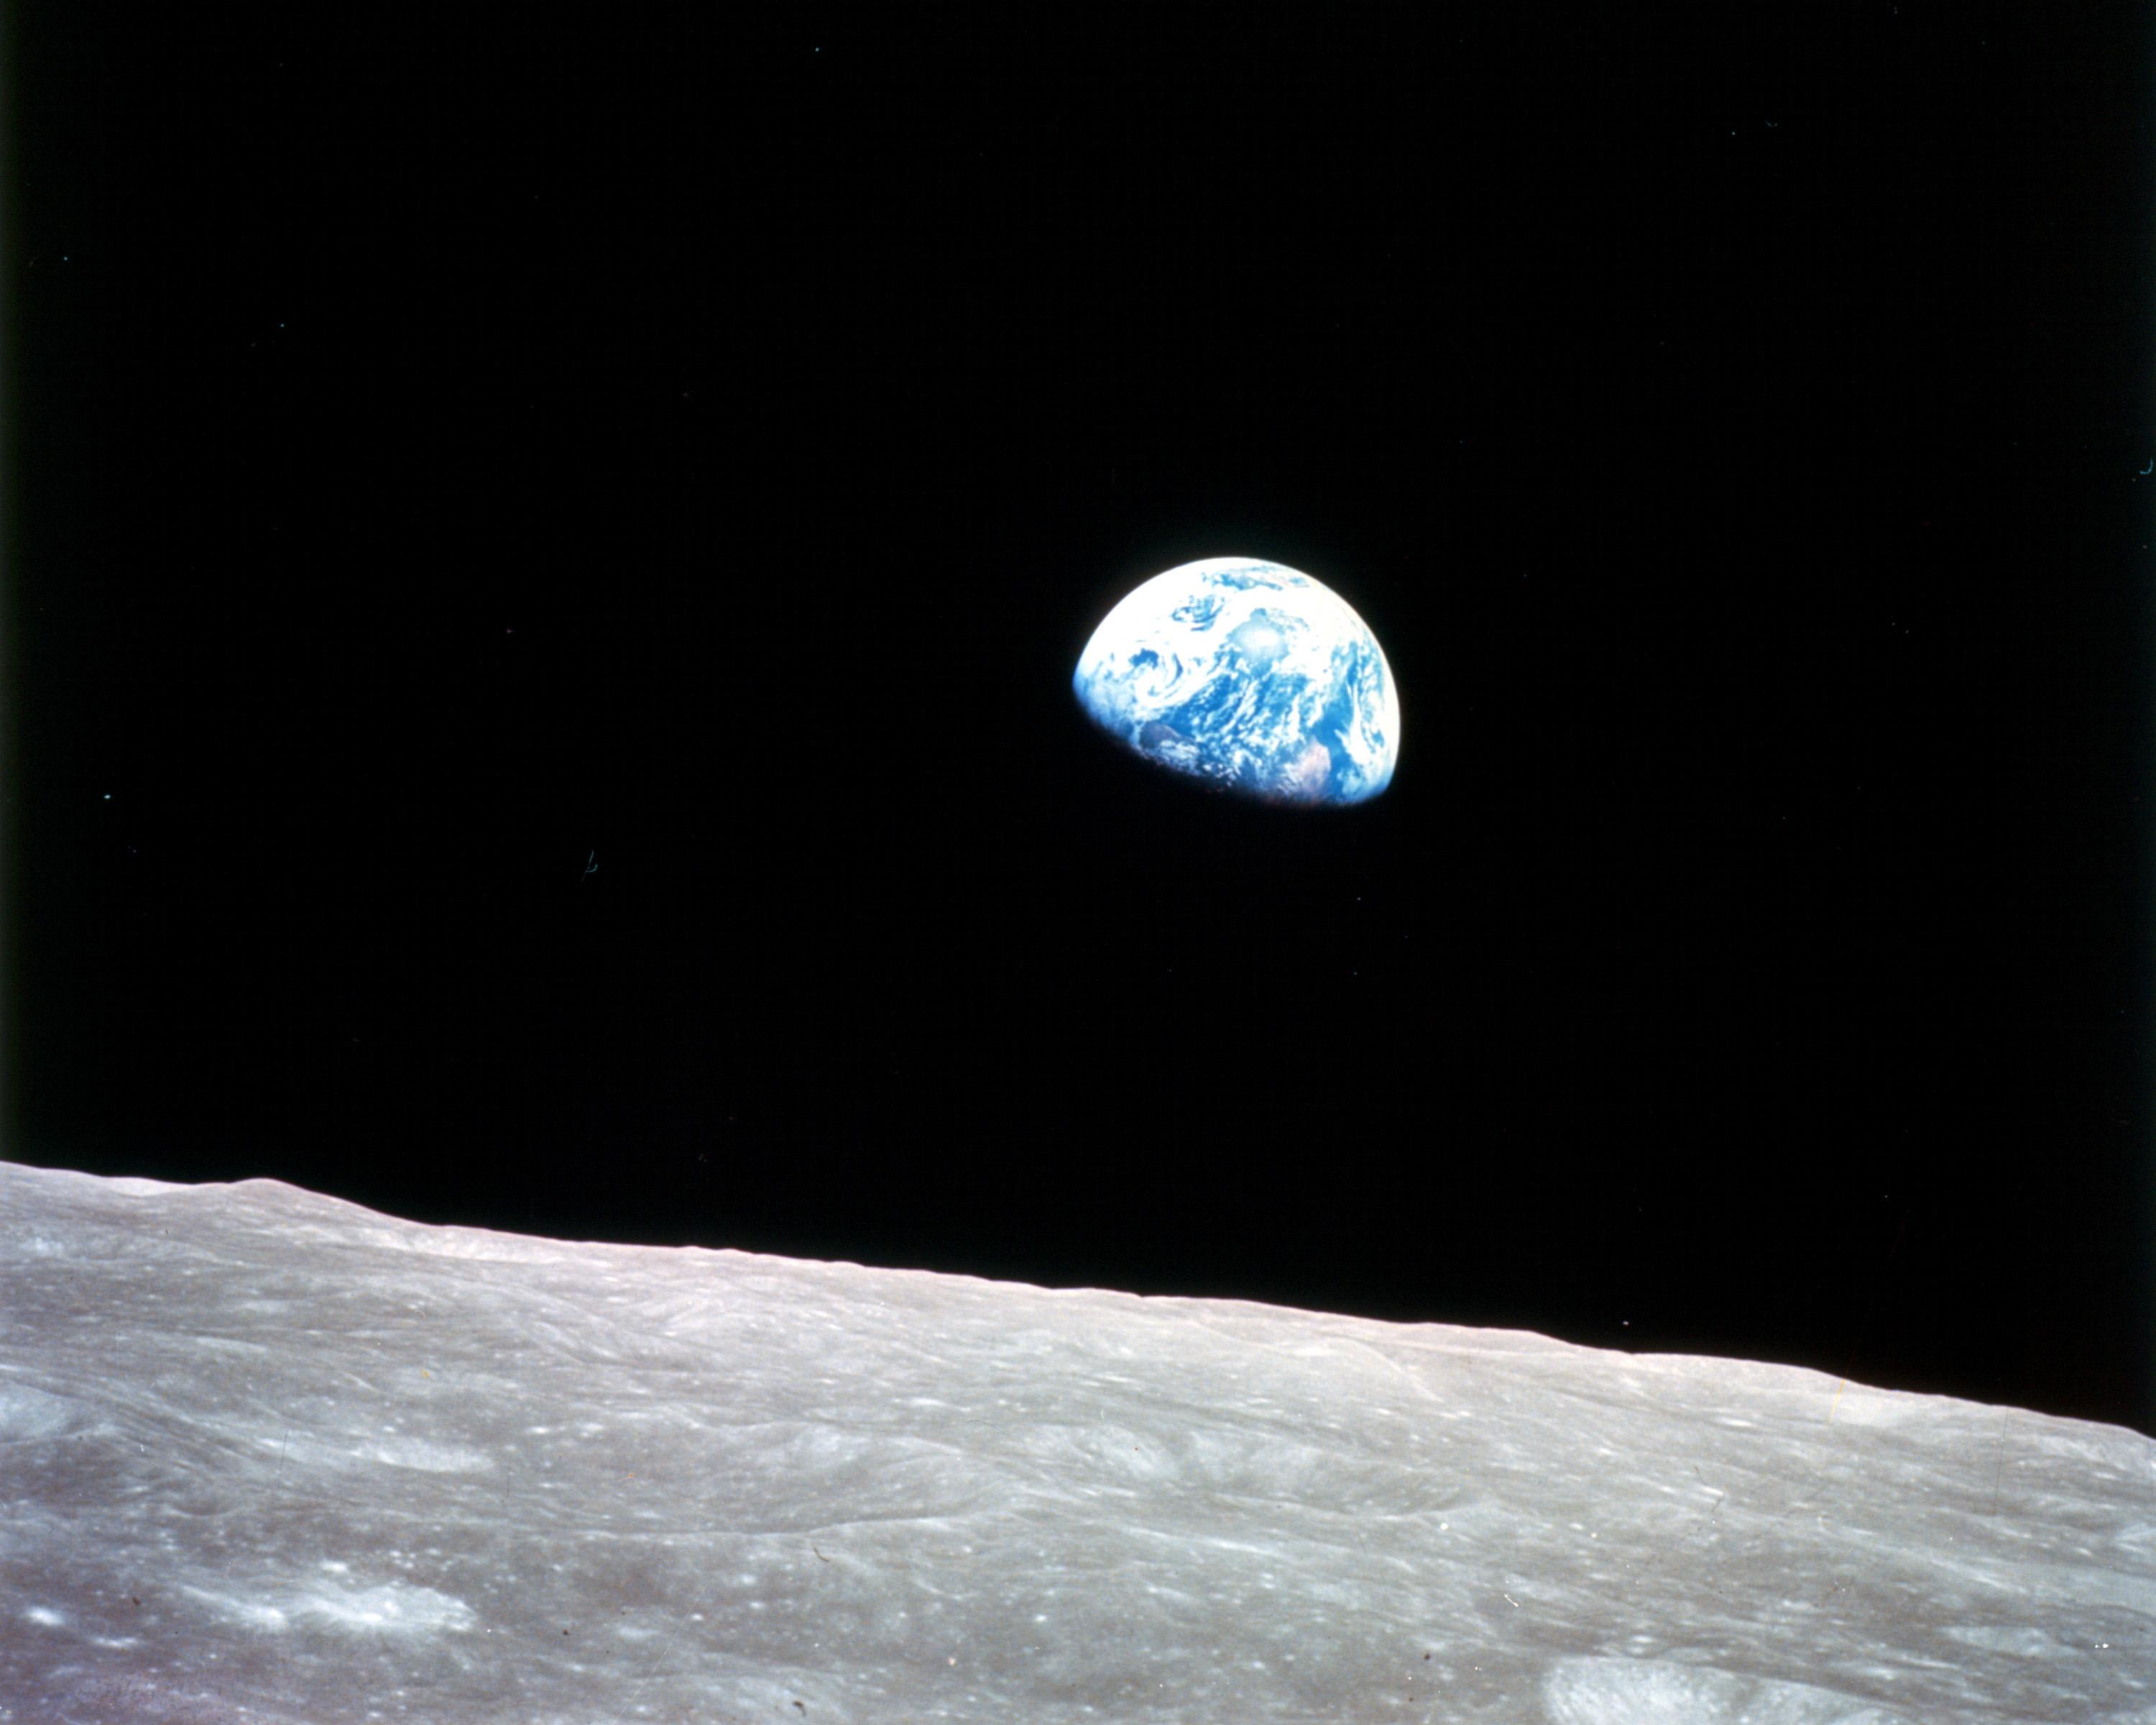 Apollo 8 Earthrise over the Moon